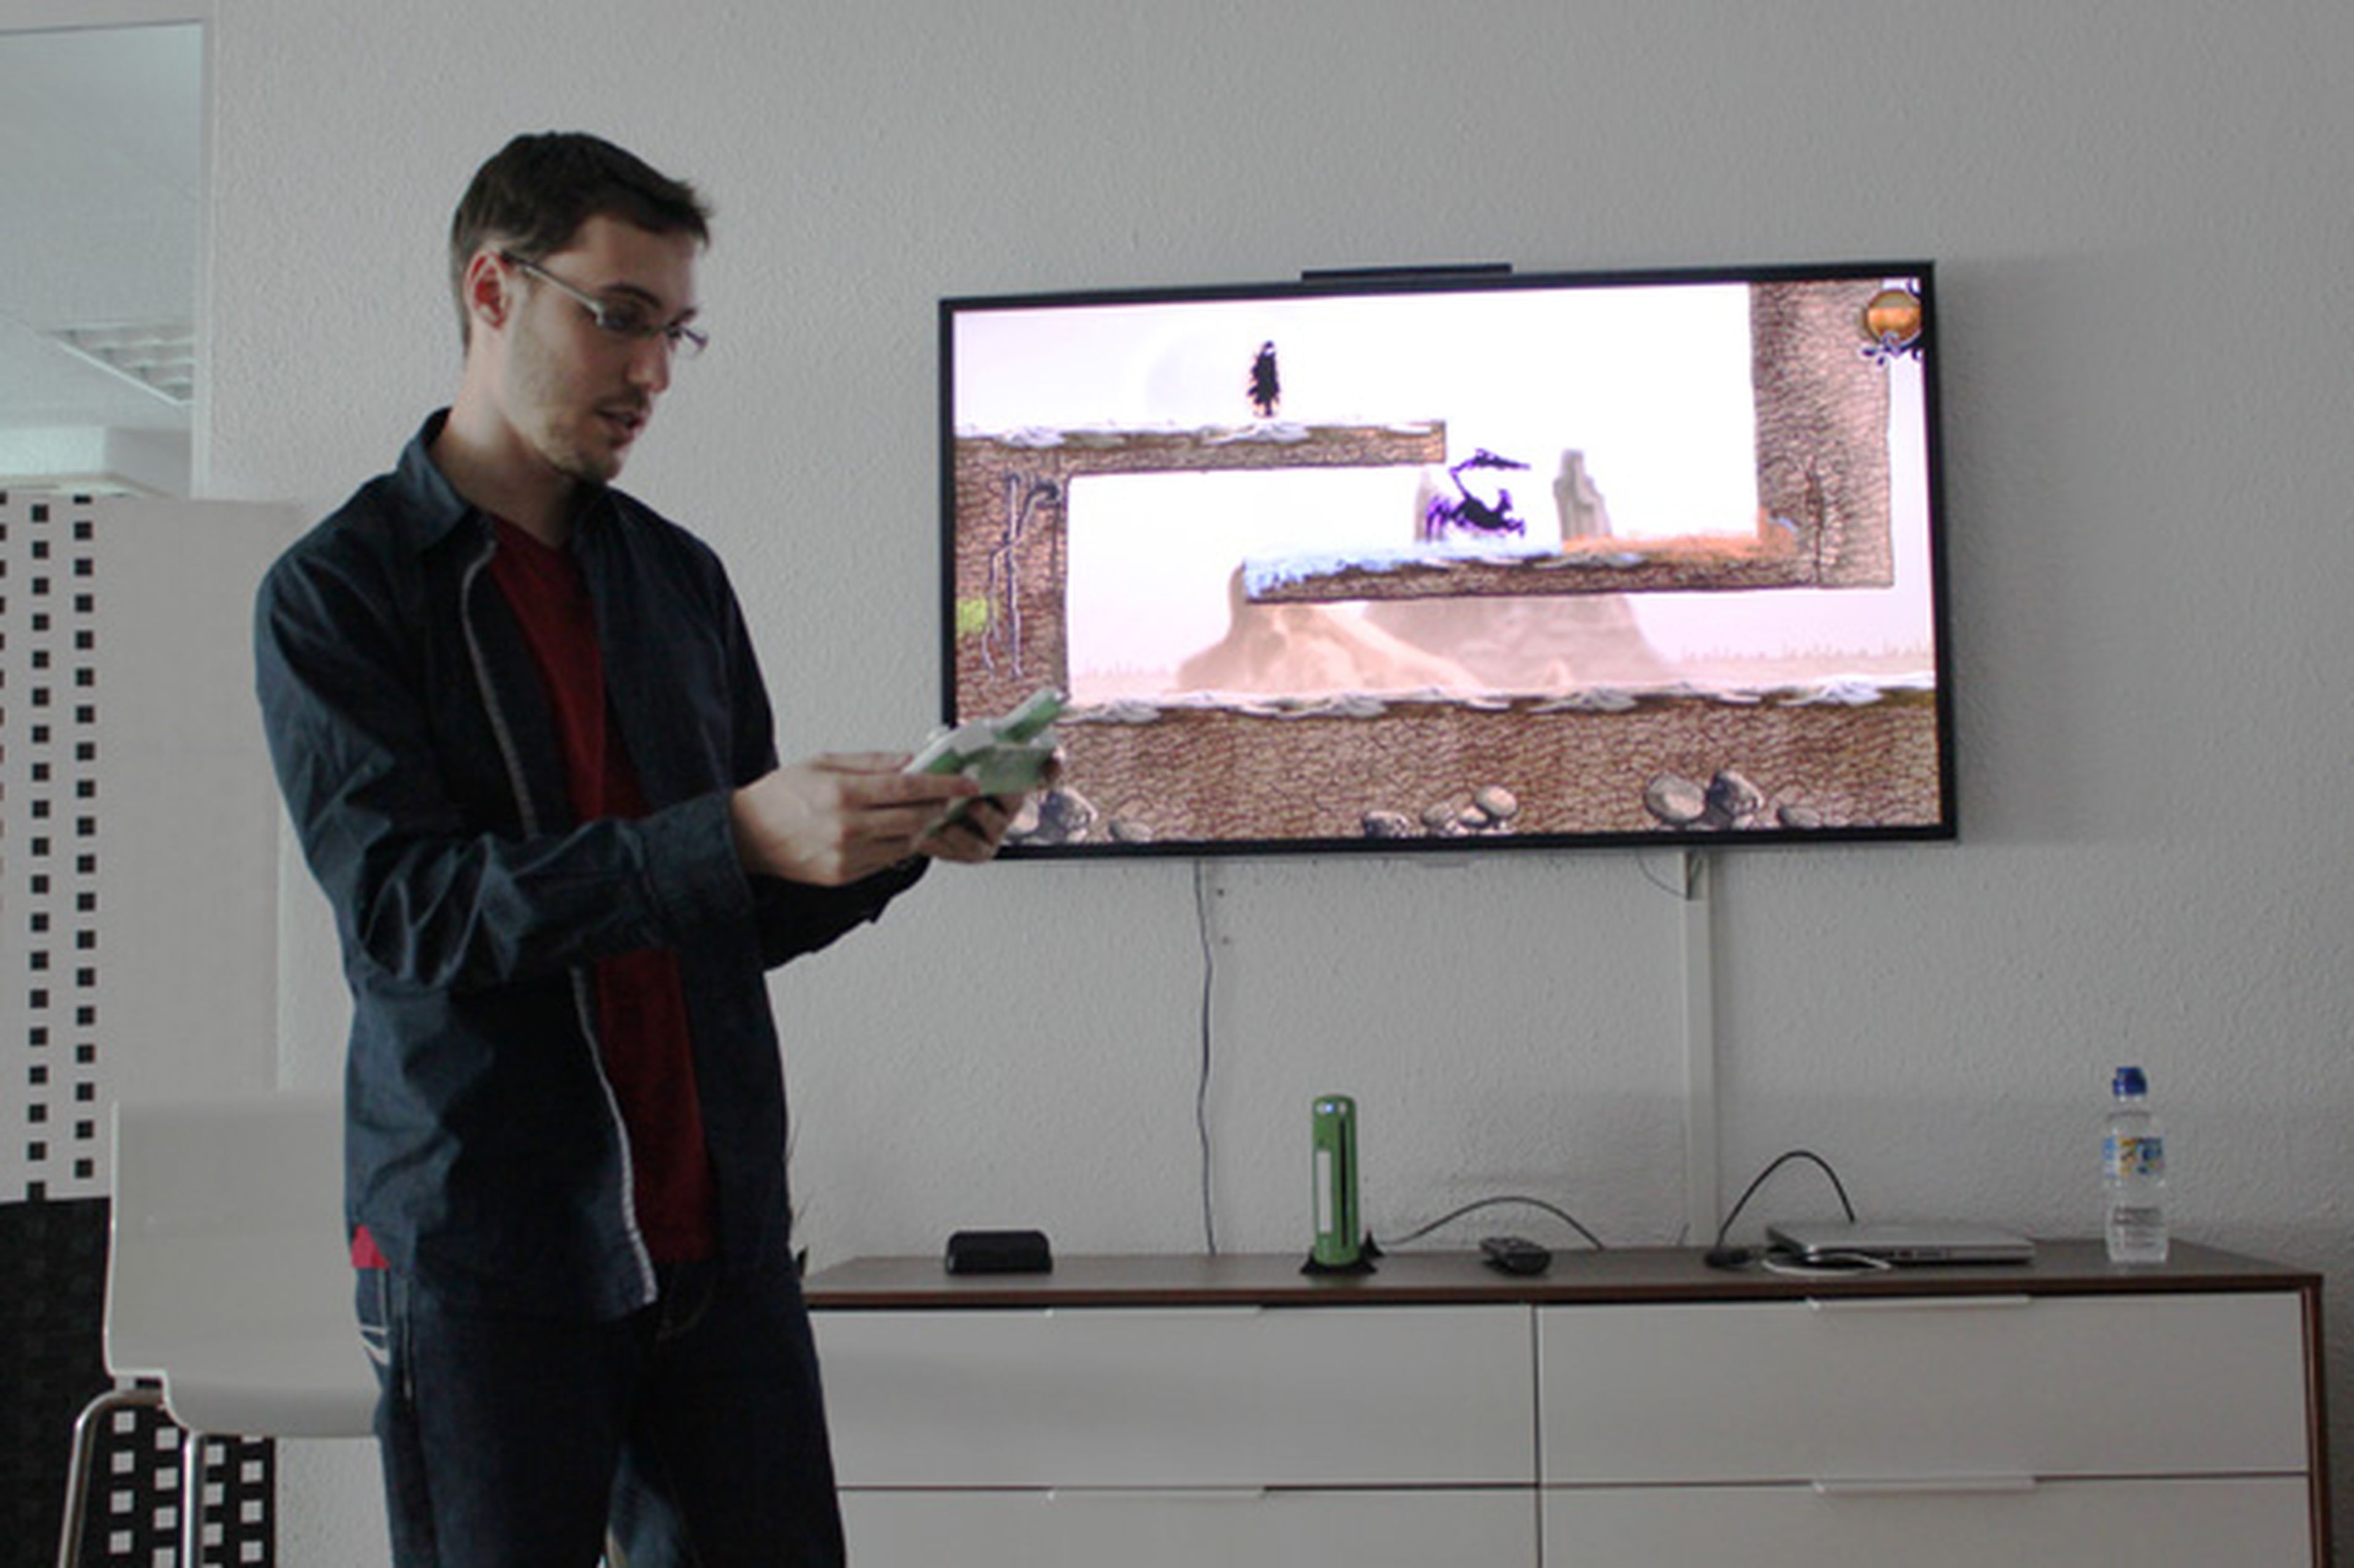 Presentación de Nihilumbra para Wii U en Madrid